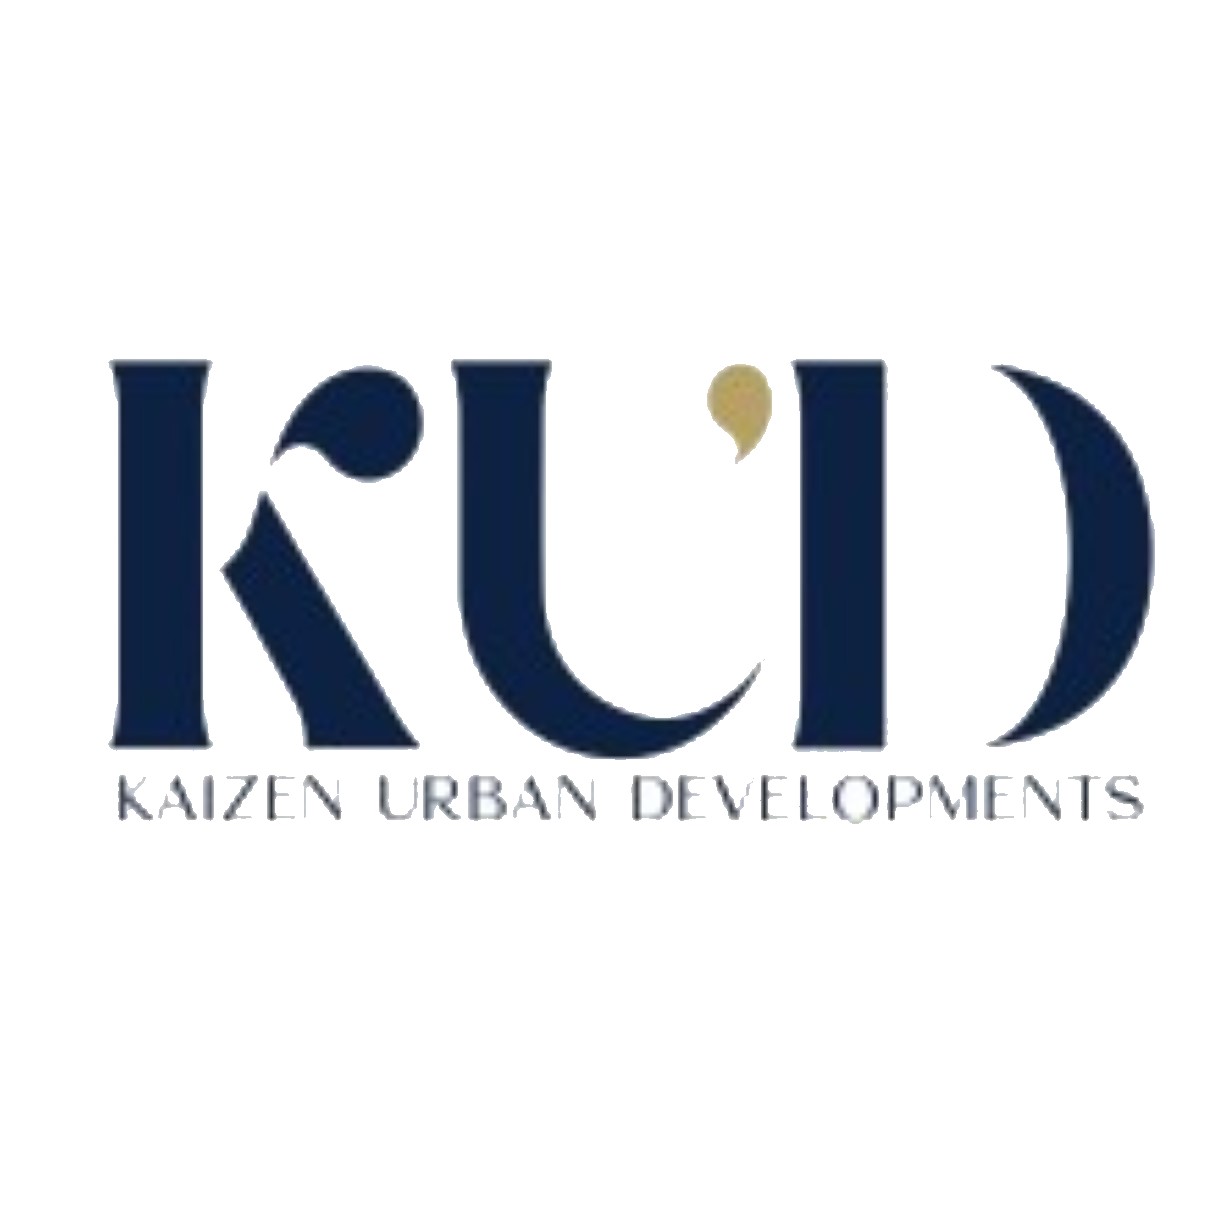 Kaizen Urban Developments (KUD)